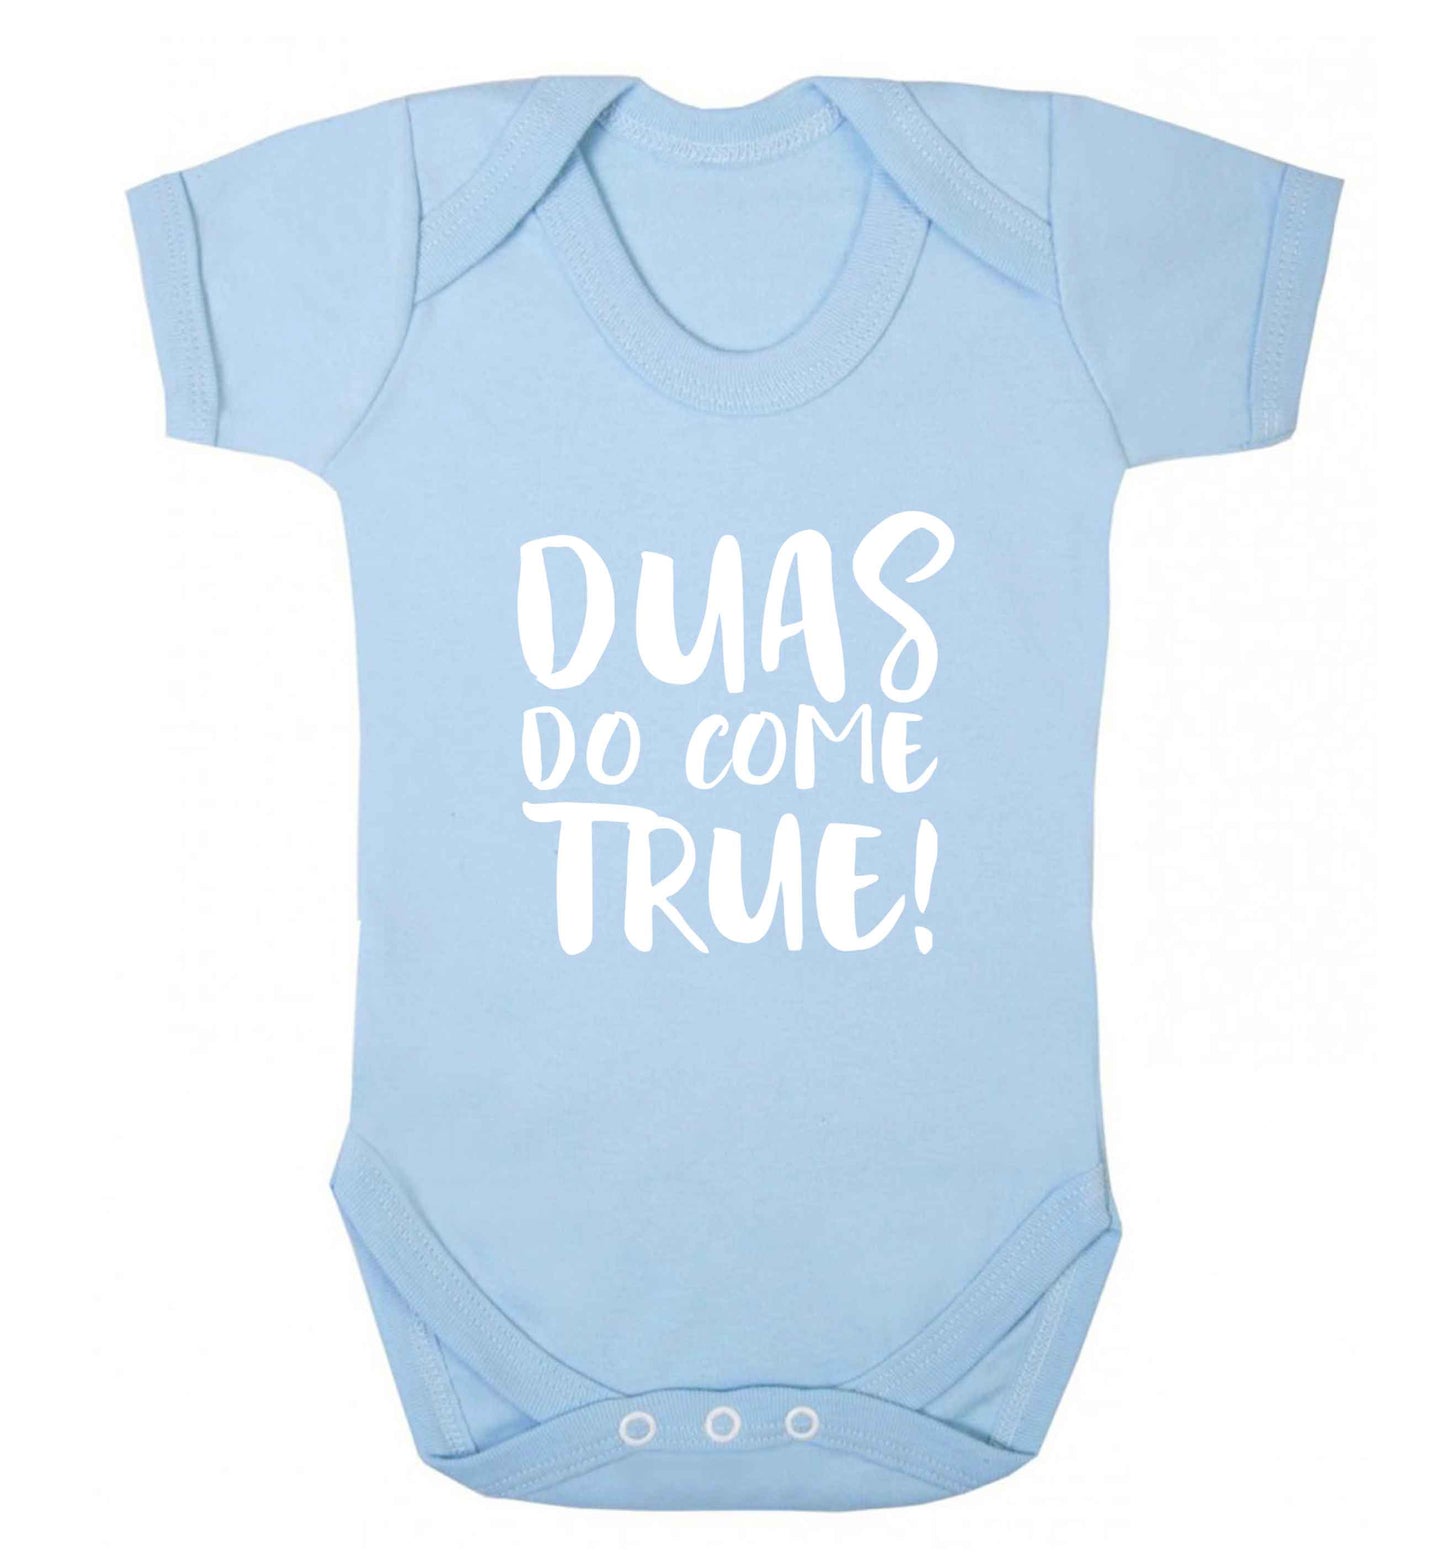 Duas do come true baby vest pale blue 18-24 months